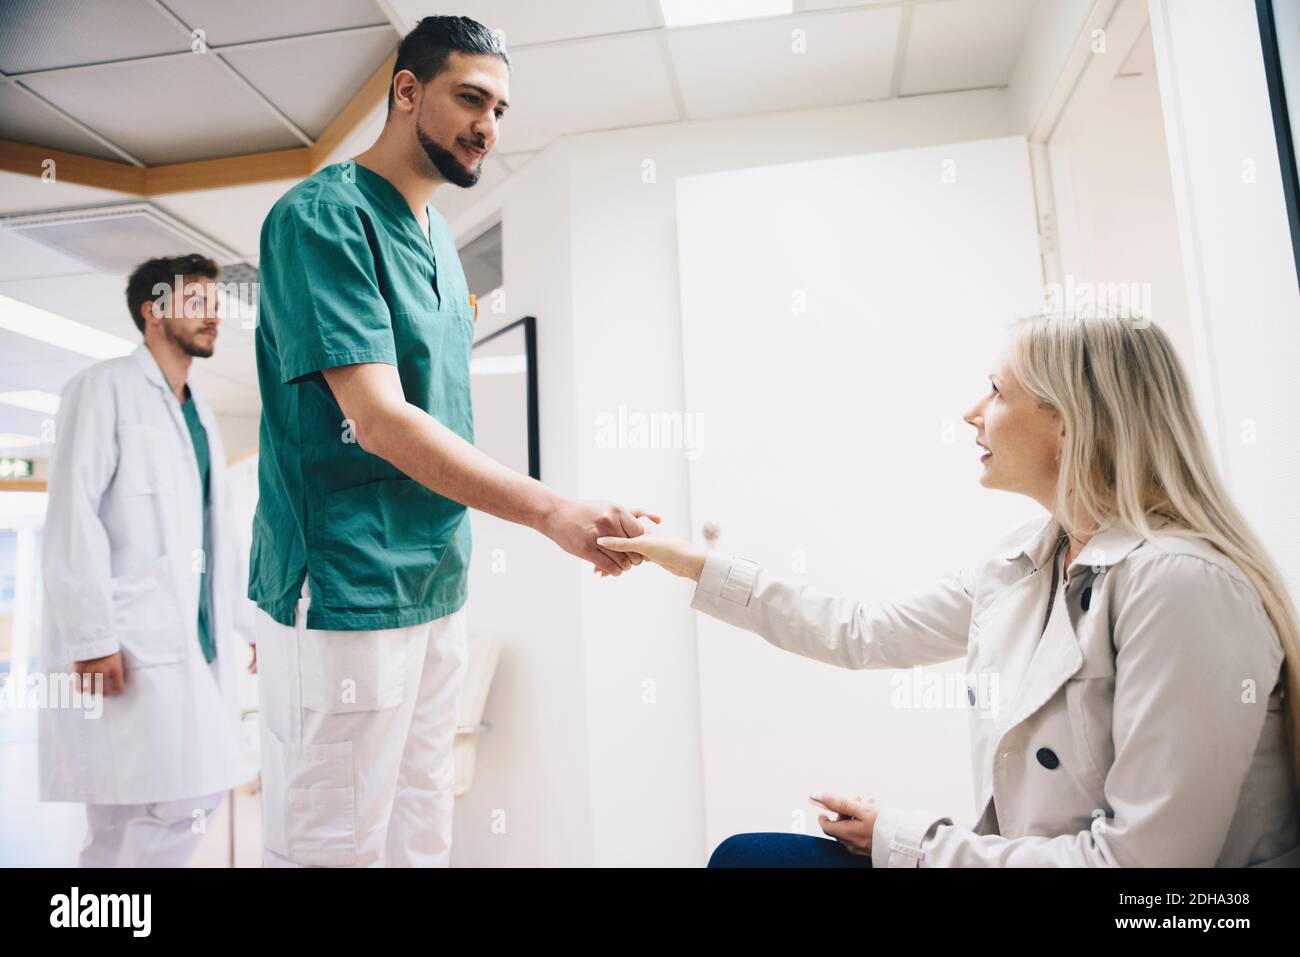 Seitenansicht der Patientin, die sich mit dem jungen Mann die Hände schüttelt Krankenschwester im Krankenhaus Stockfoto